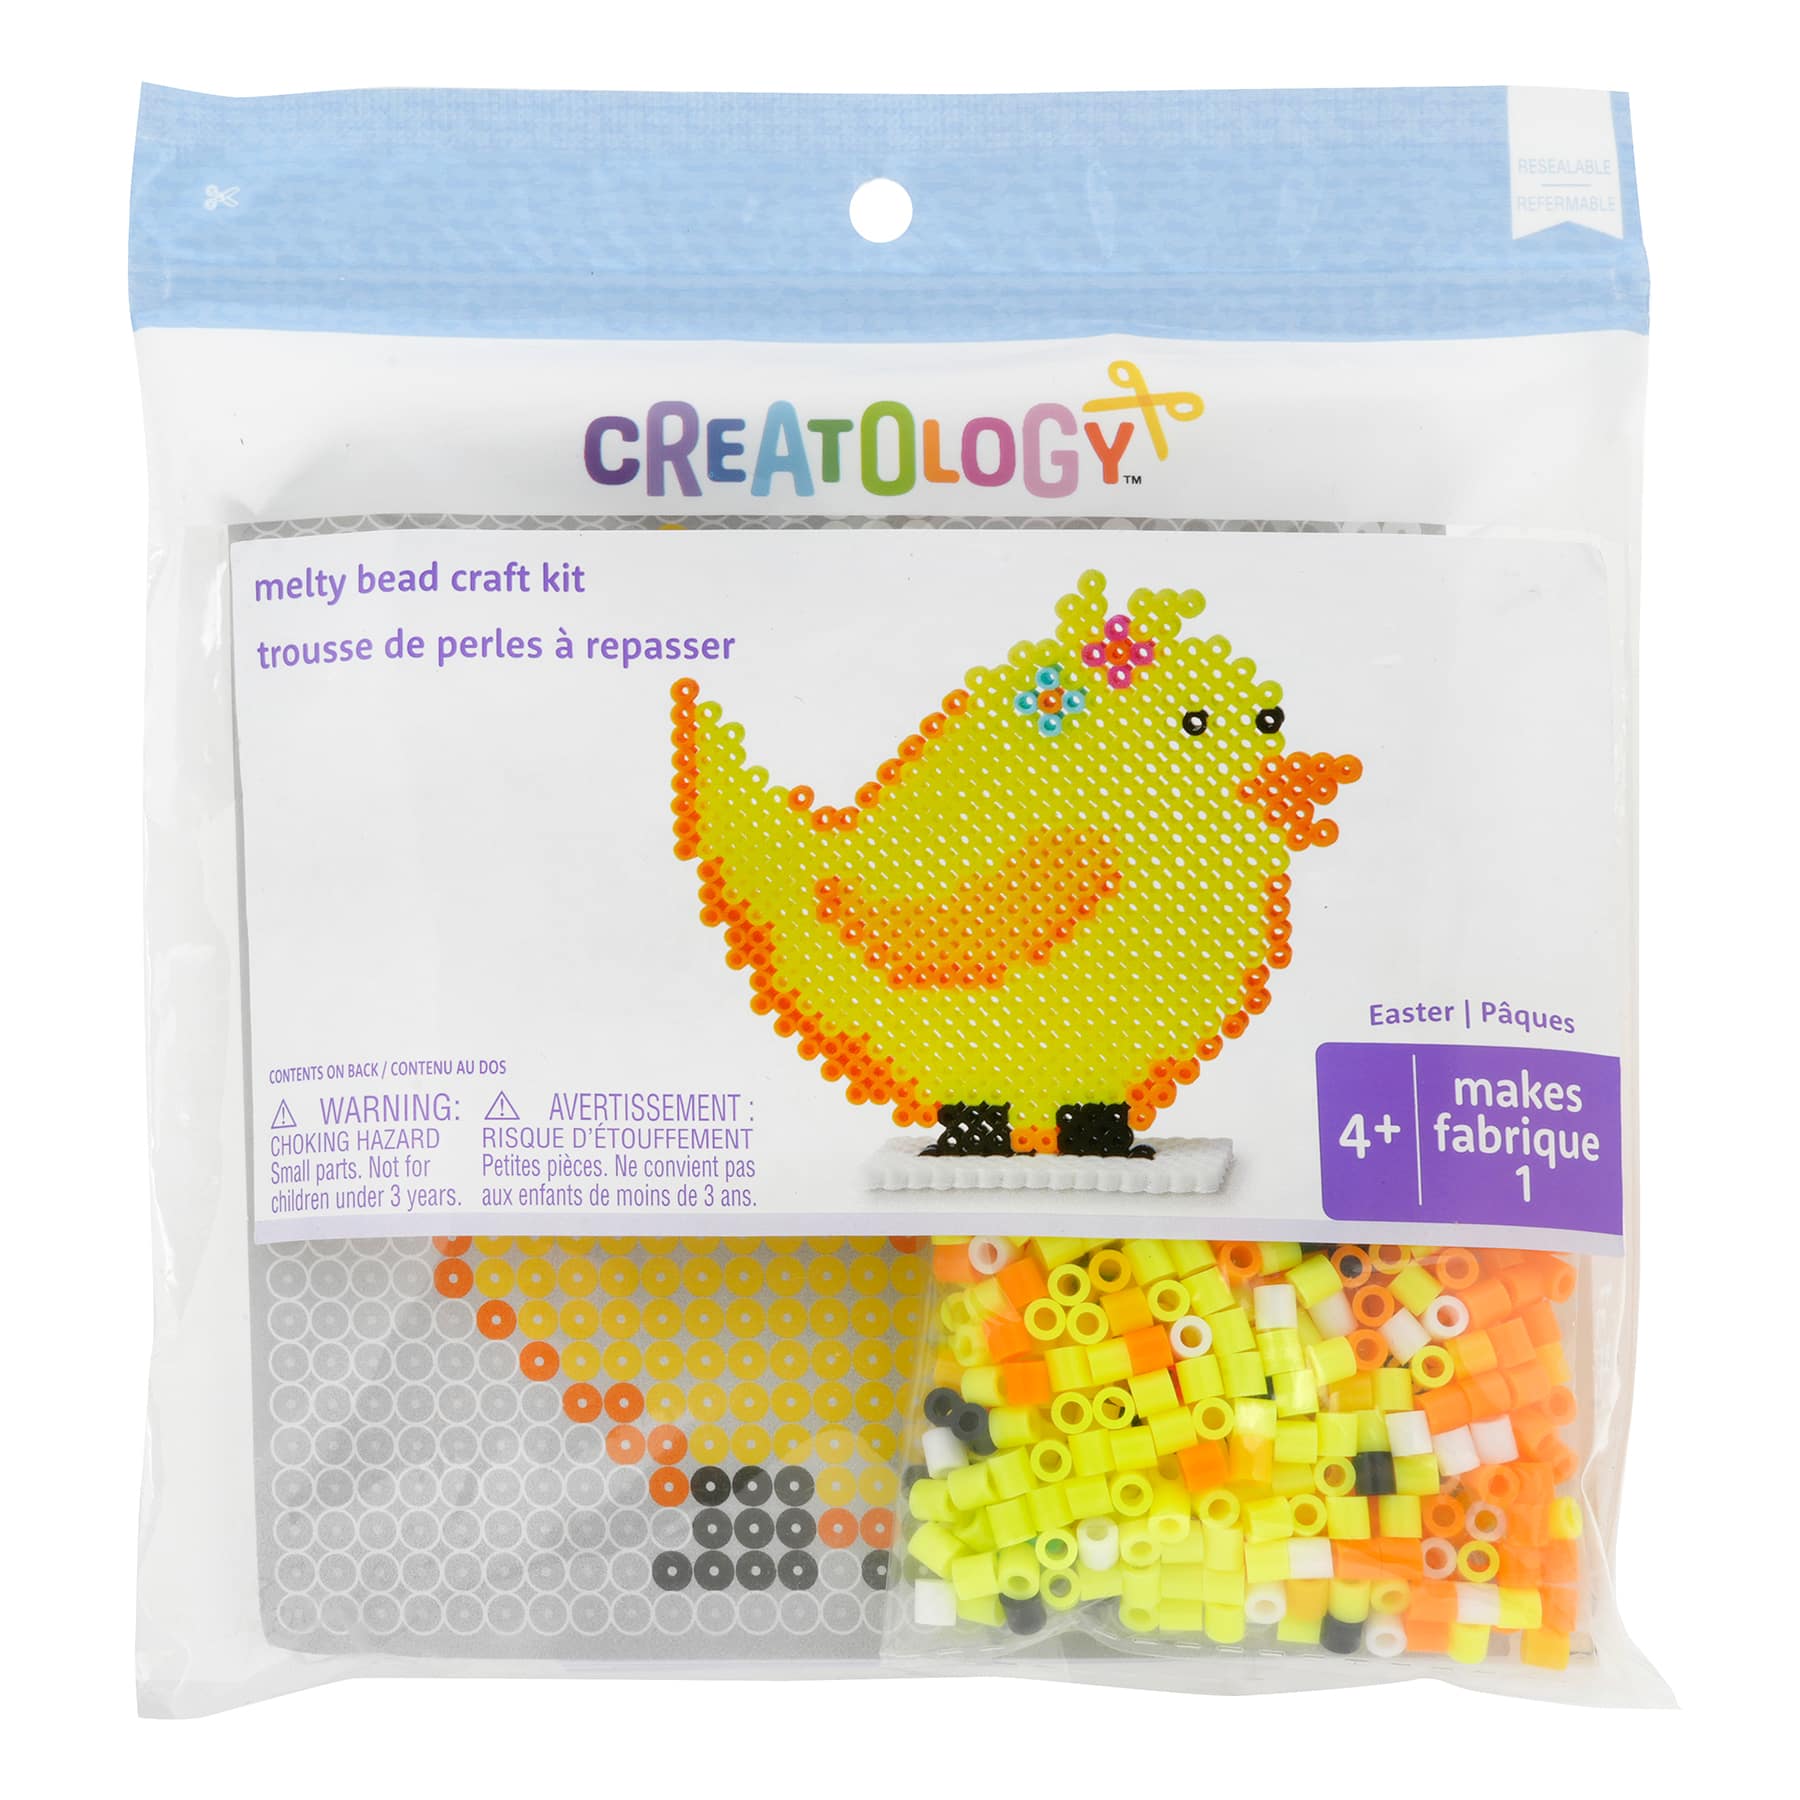 Melty Bead Kit by Creatology™